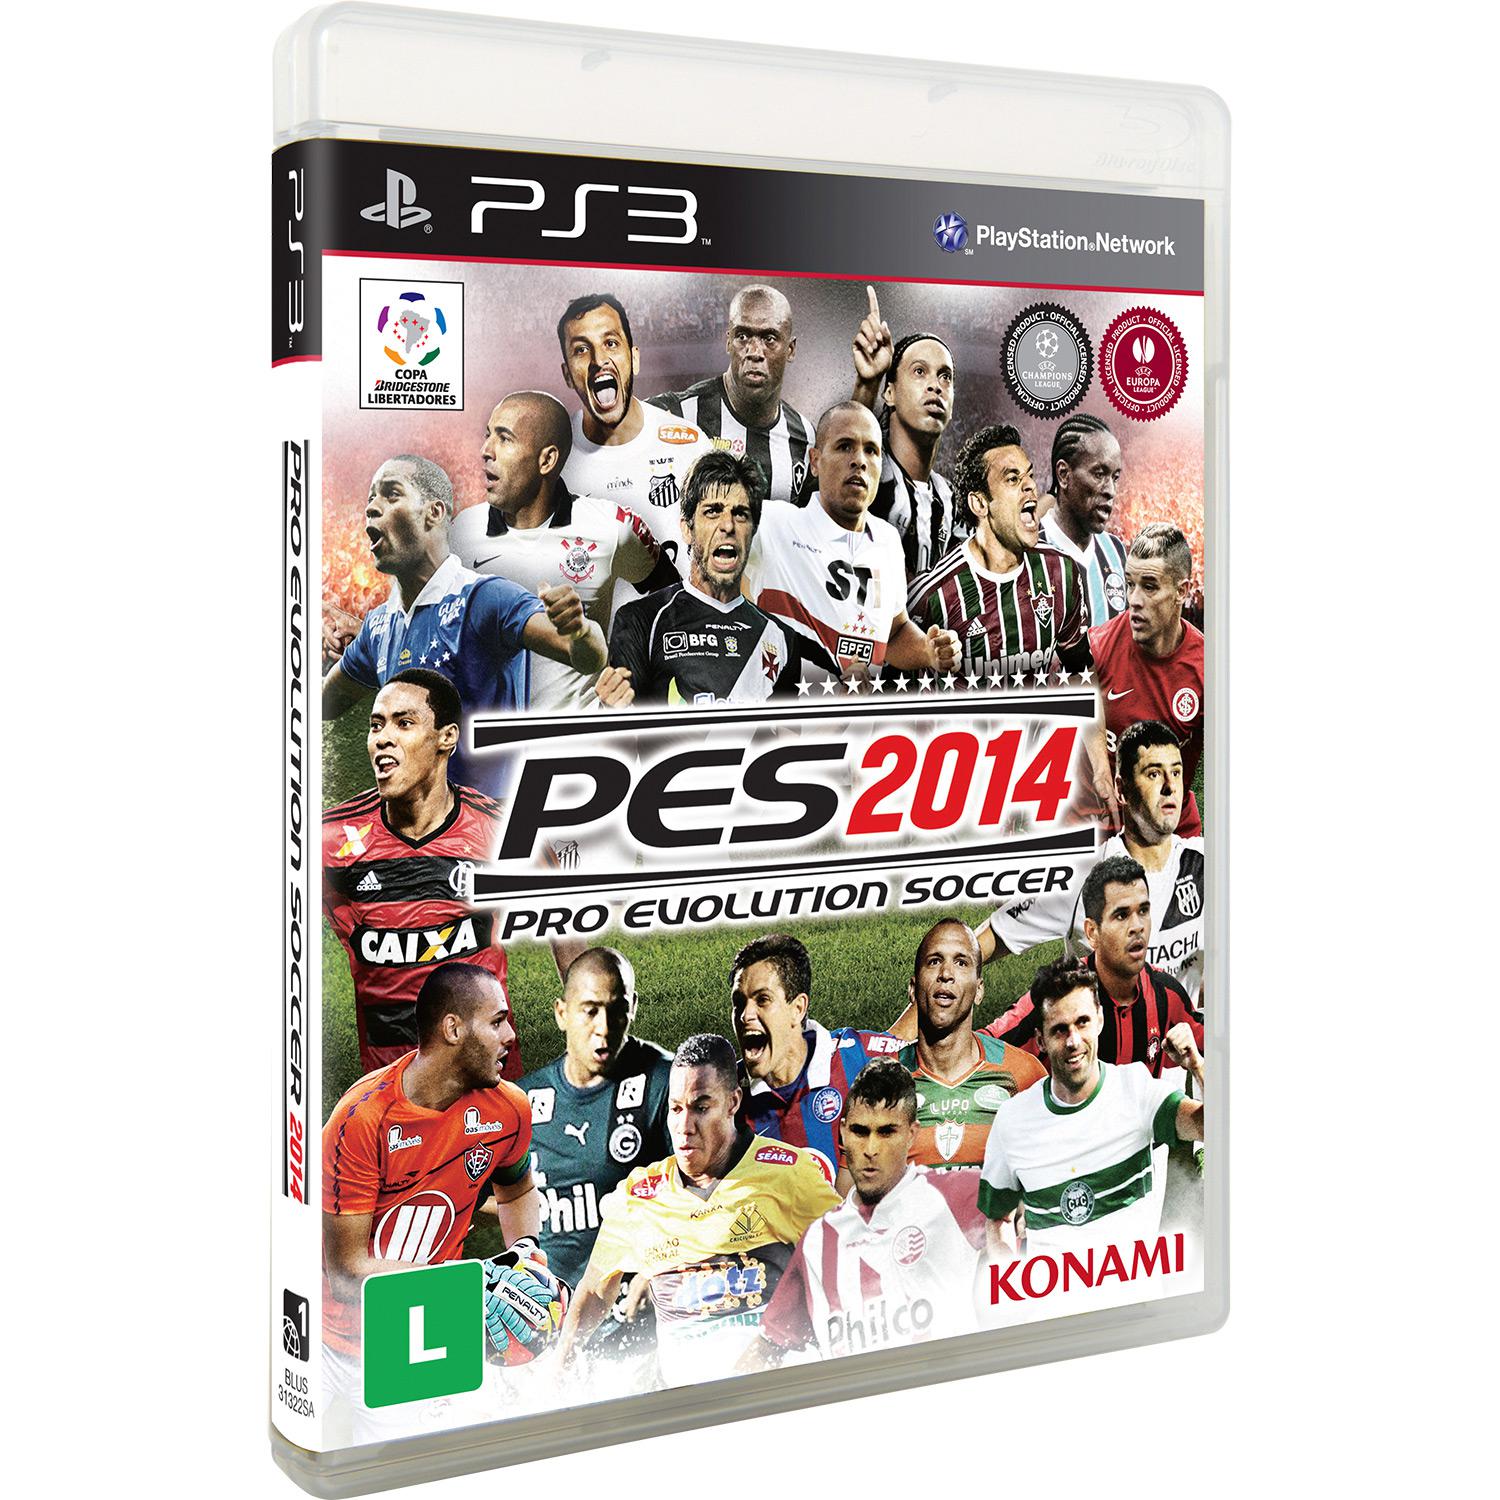 Game Pro Evolution Soccer 2014 - PS3 - Produção Nacional é bom? Vale a pena?